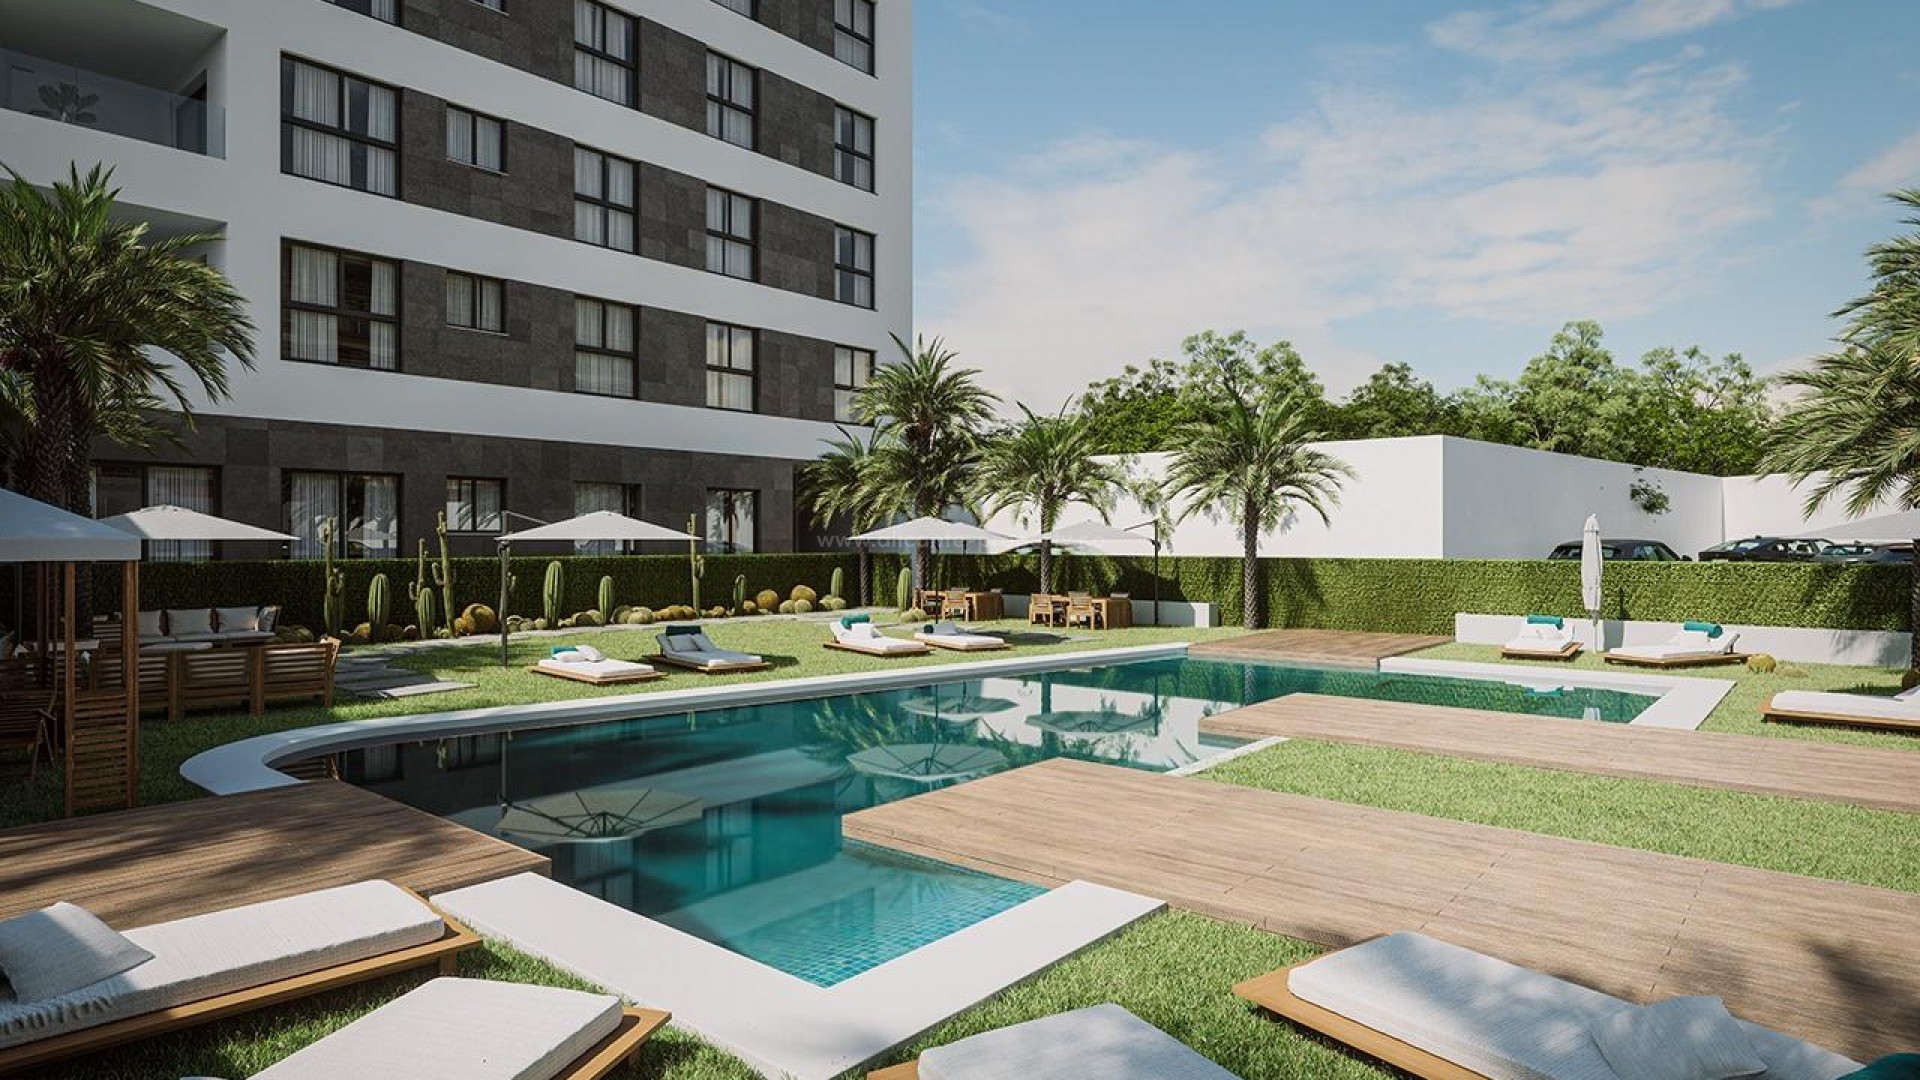 Nye leiligheter og toppleiligheter i Guardamar del Segura, 2/3 soverom, terrasse, grønne områder og et felles svømmebasseng. Nær fine strender.